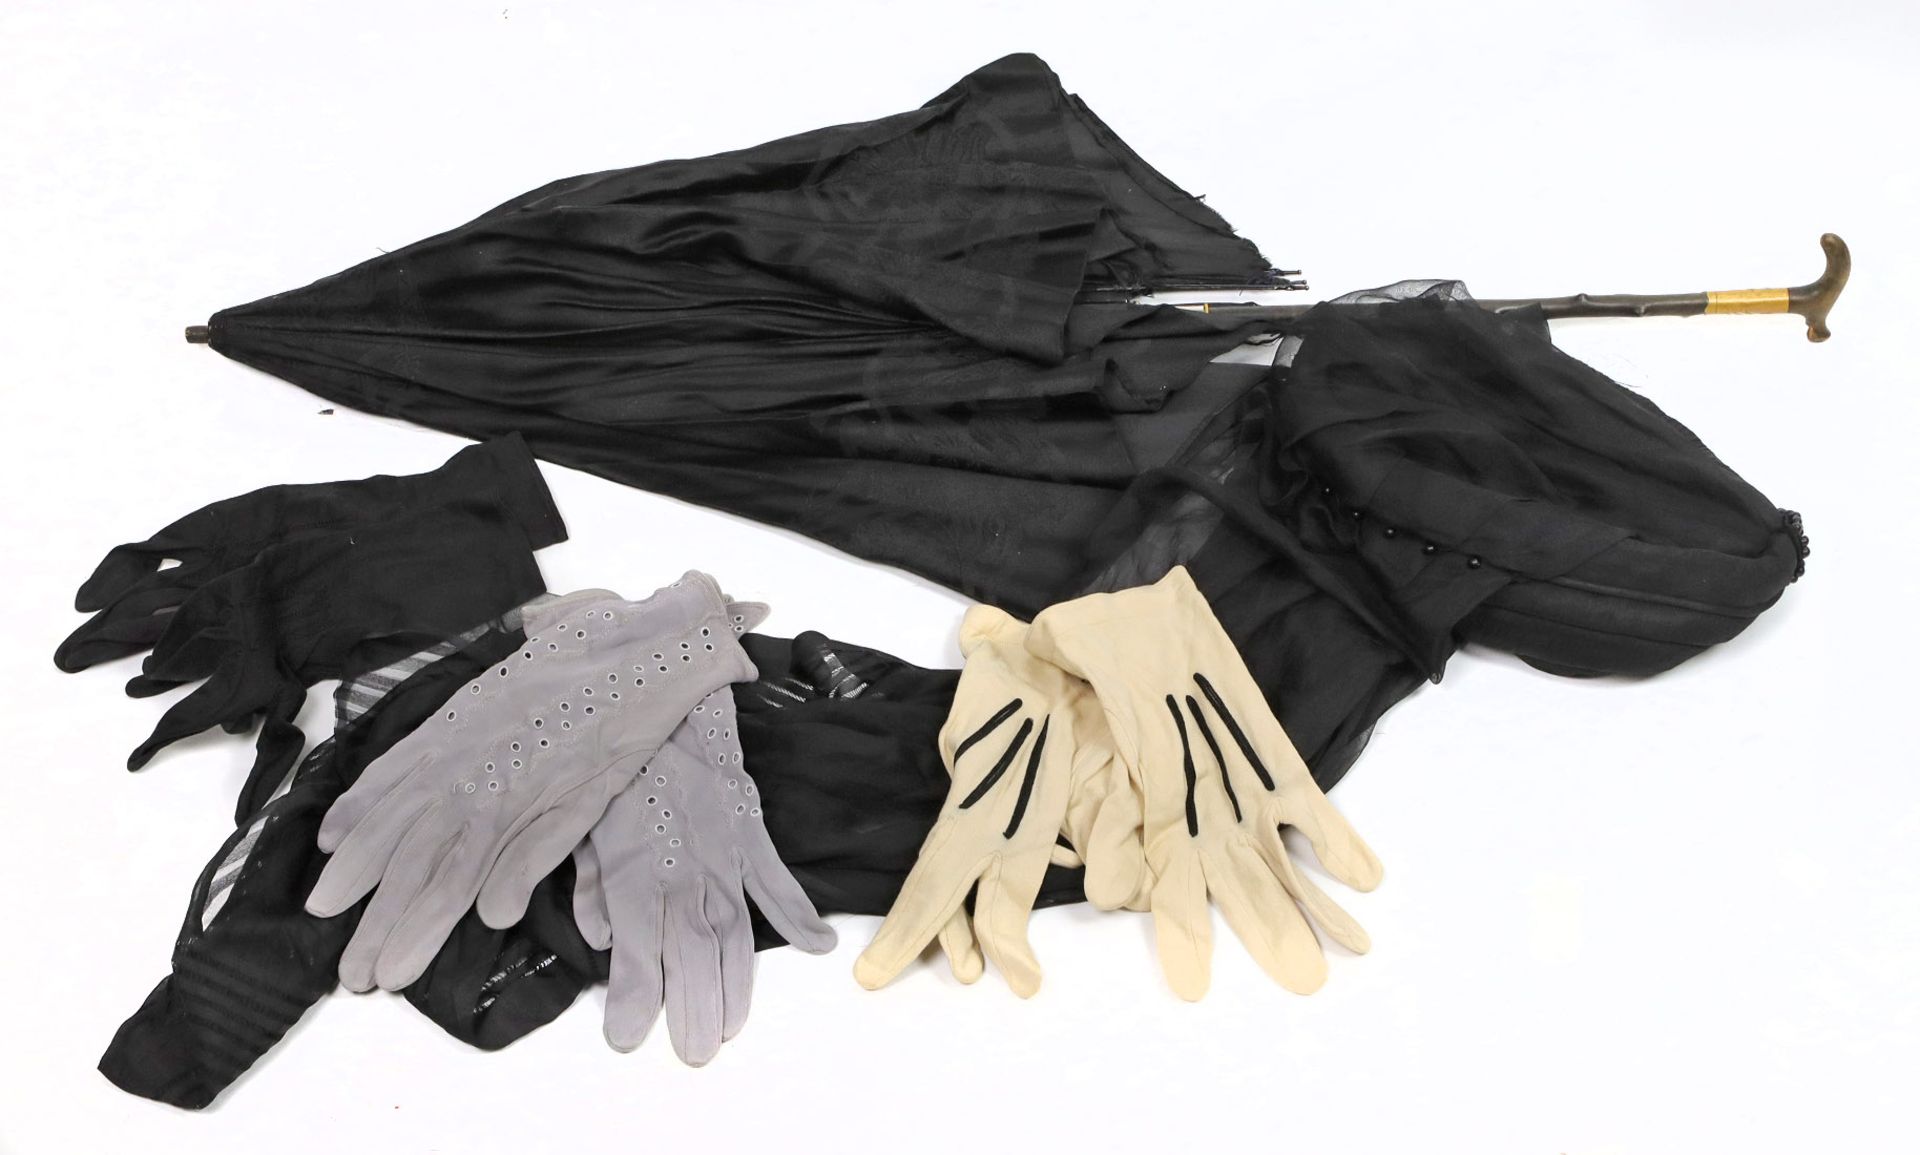 schwarze Damengarderobe um 1930dabei Kleid mit schmal geschnittenem, schulterbedecktem Oberteil, - Image 2 of 2